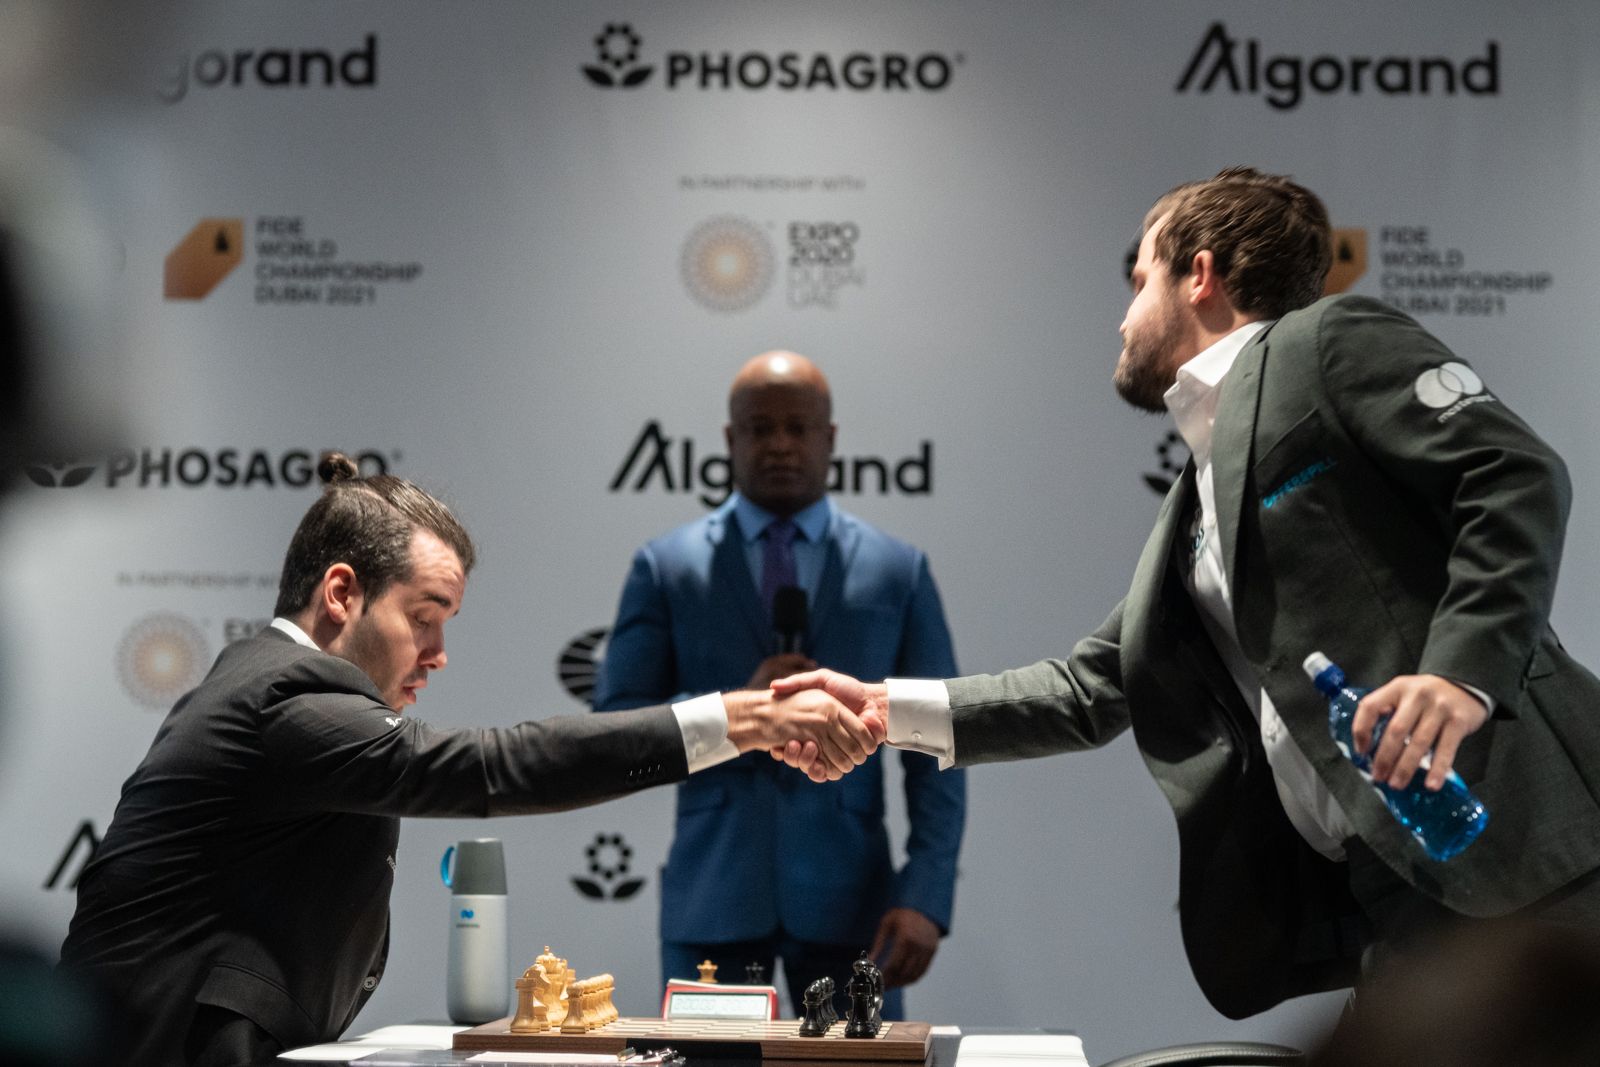 Campeonato Mundial de Xadrez da FIDE - partida 4: Nepo segura Carlsen com  uma Petroff 